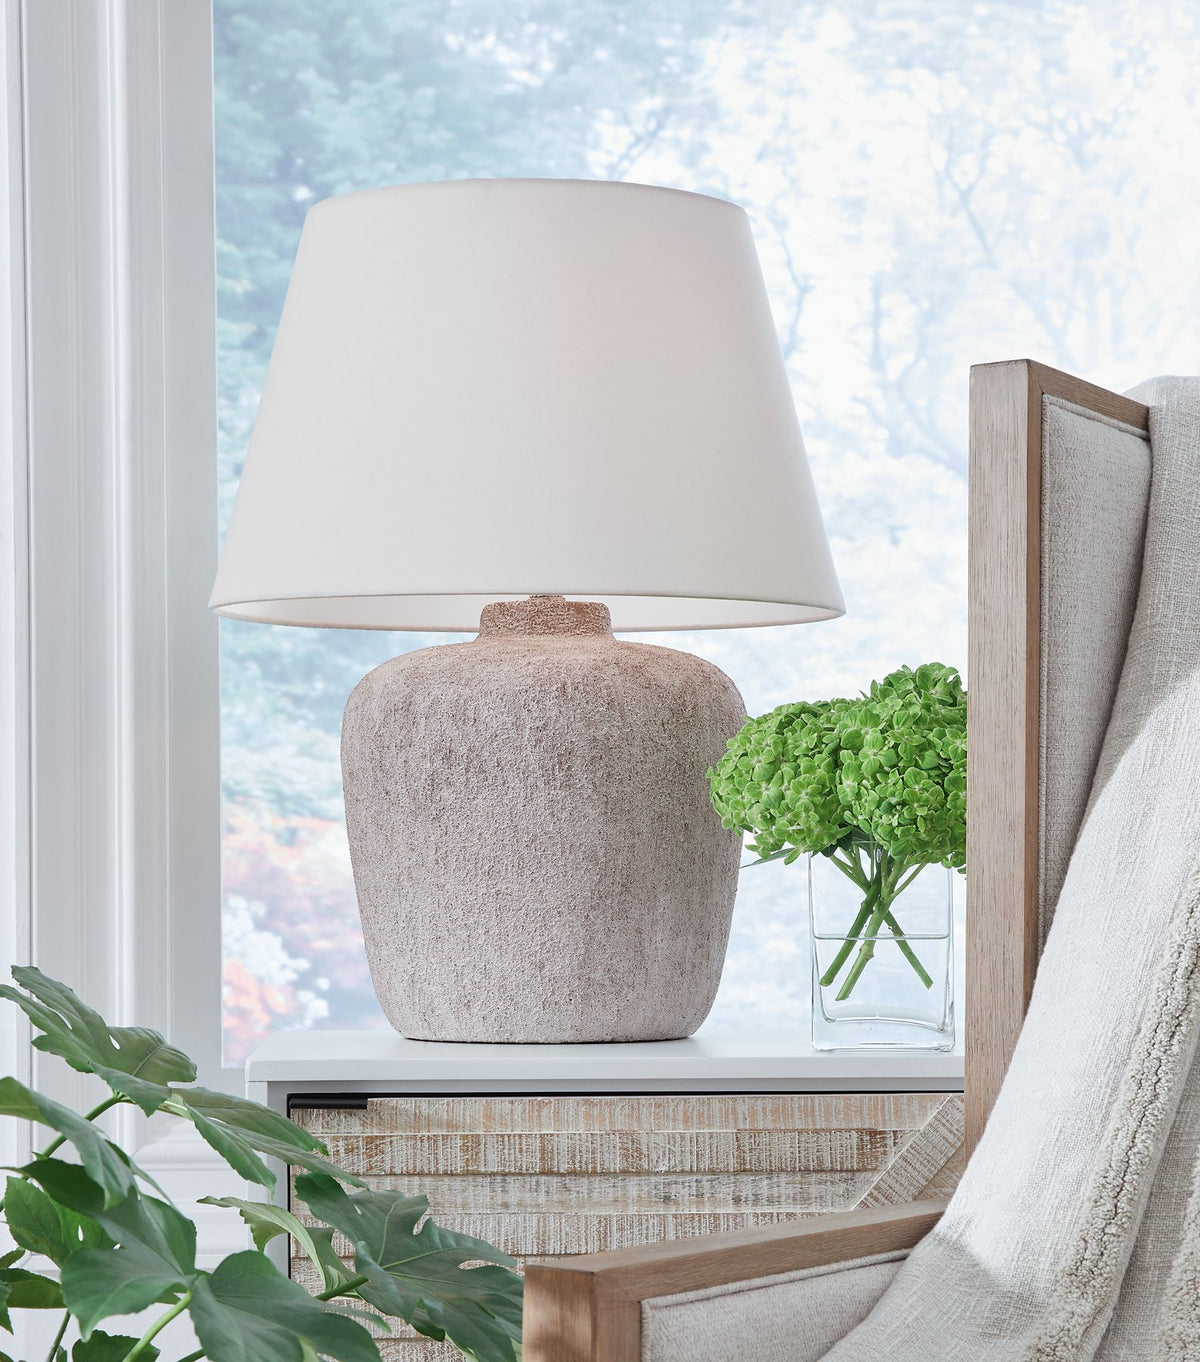 Danry Lamp Set - Half Price Furniture